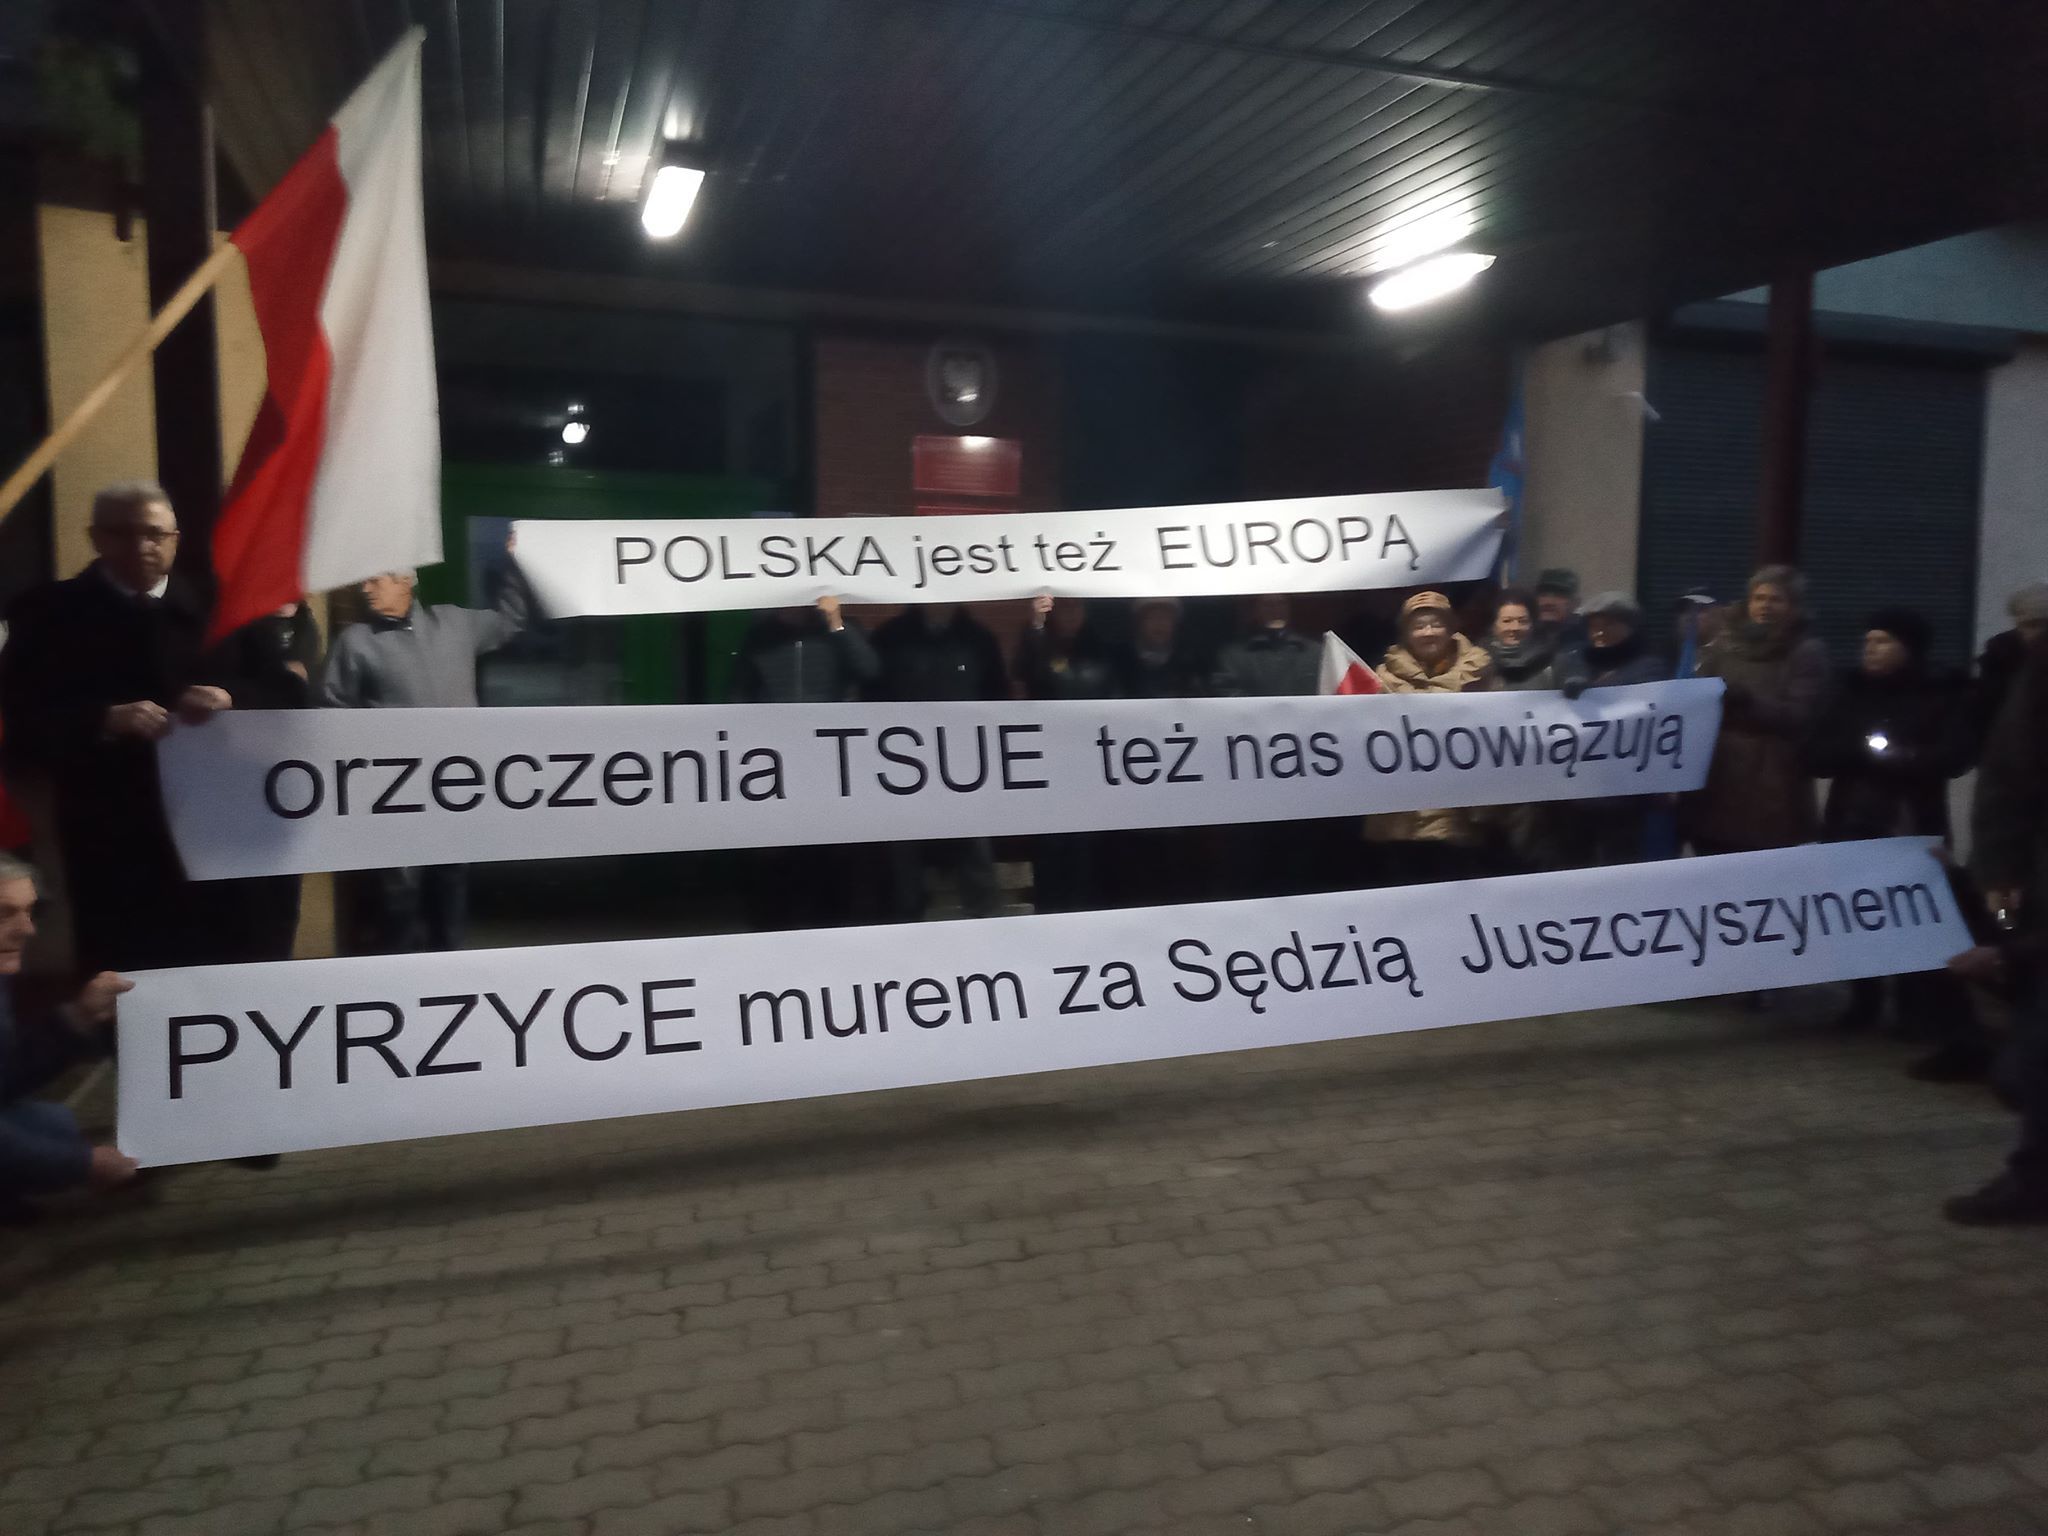 You are currently viewing Pyrzyce murem za sędzią